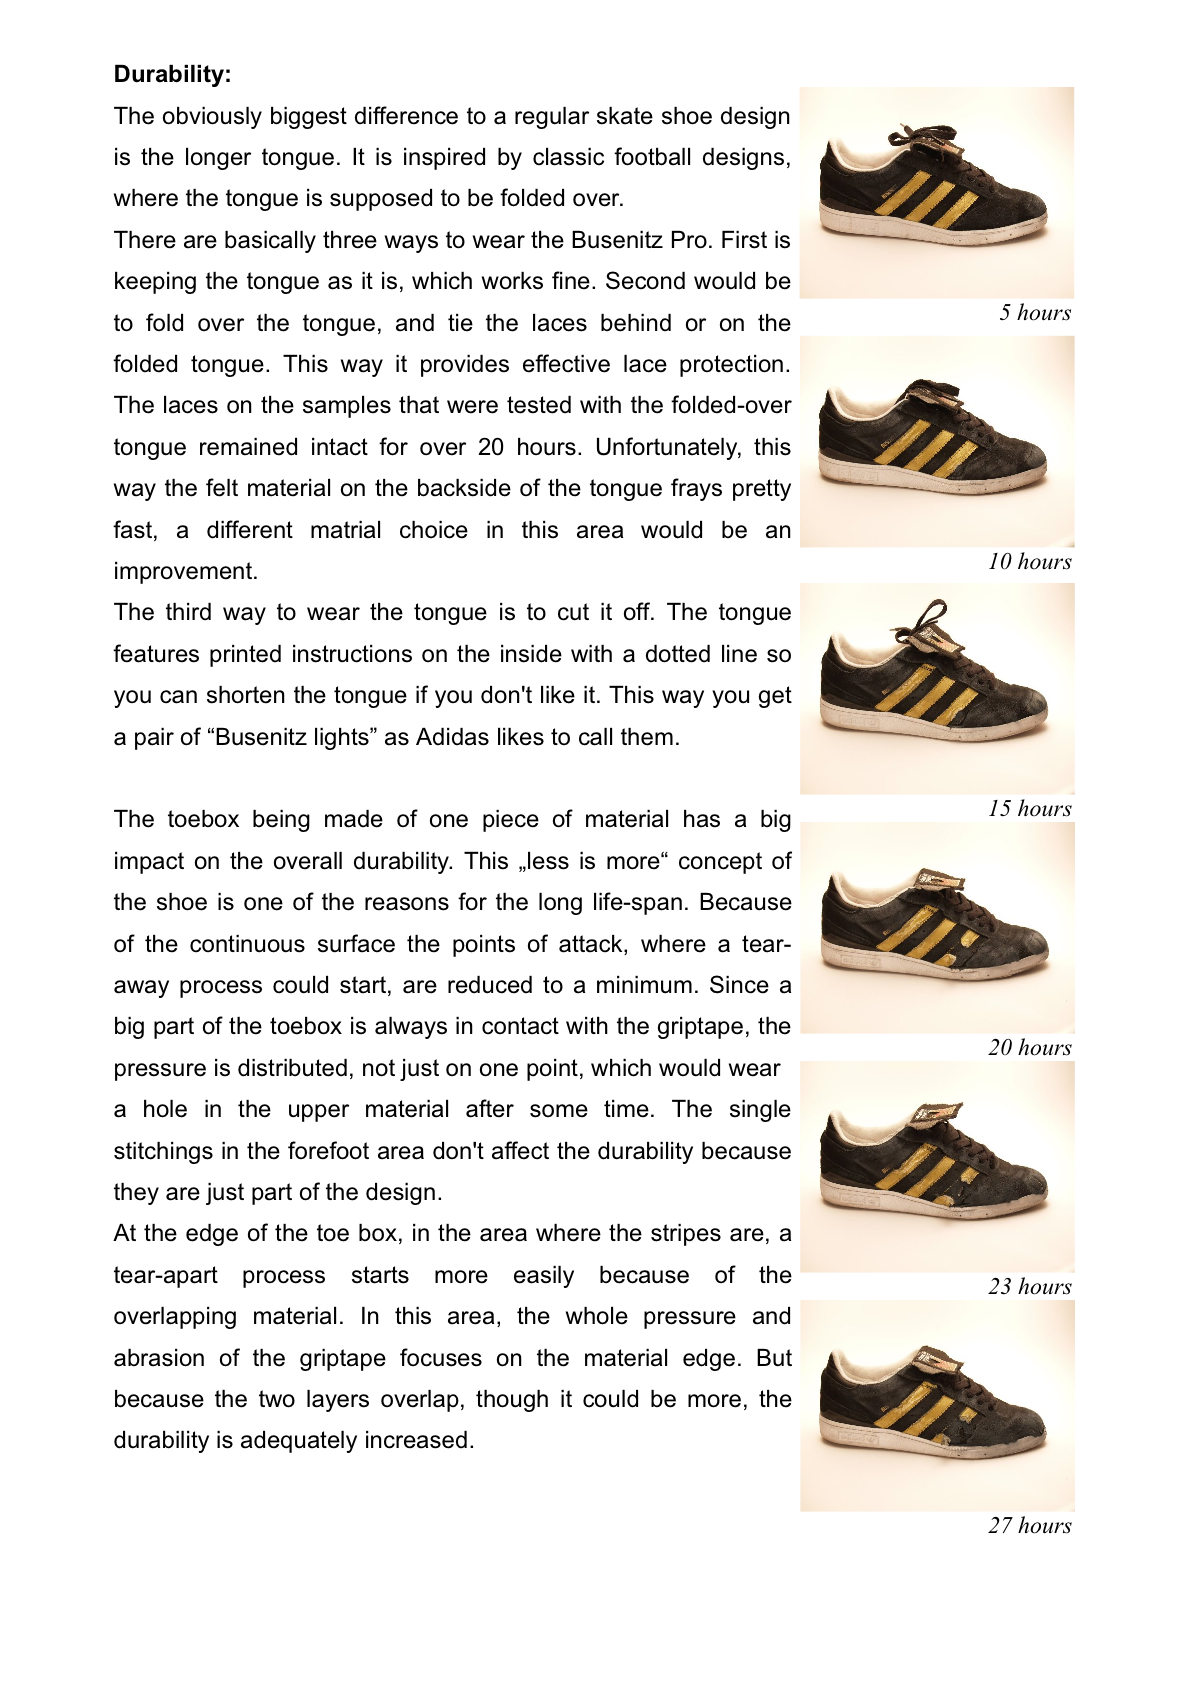 uudgrundelig Økonomi Fjernelse Adidas Busenitz Pro - Weartested - detailed skate shoe reviews